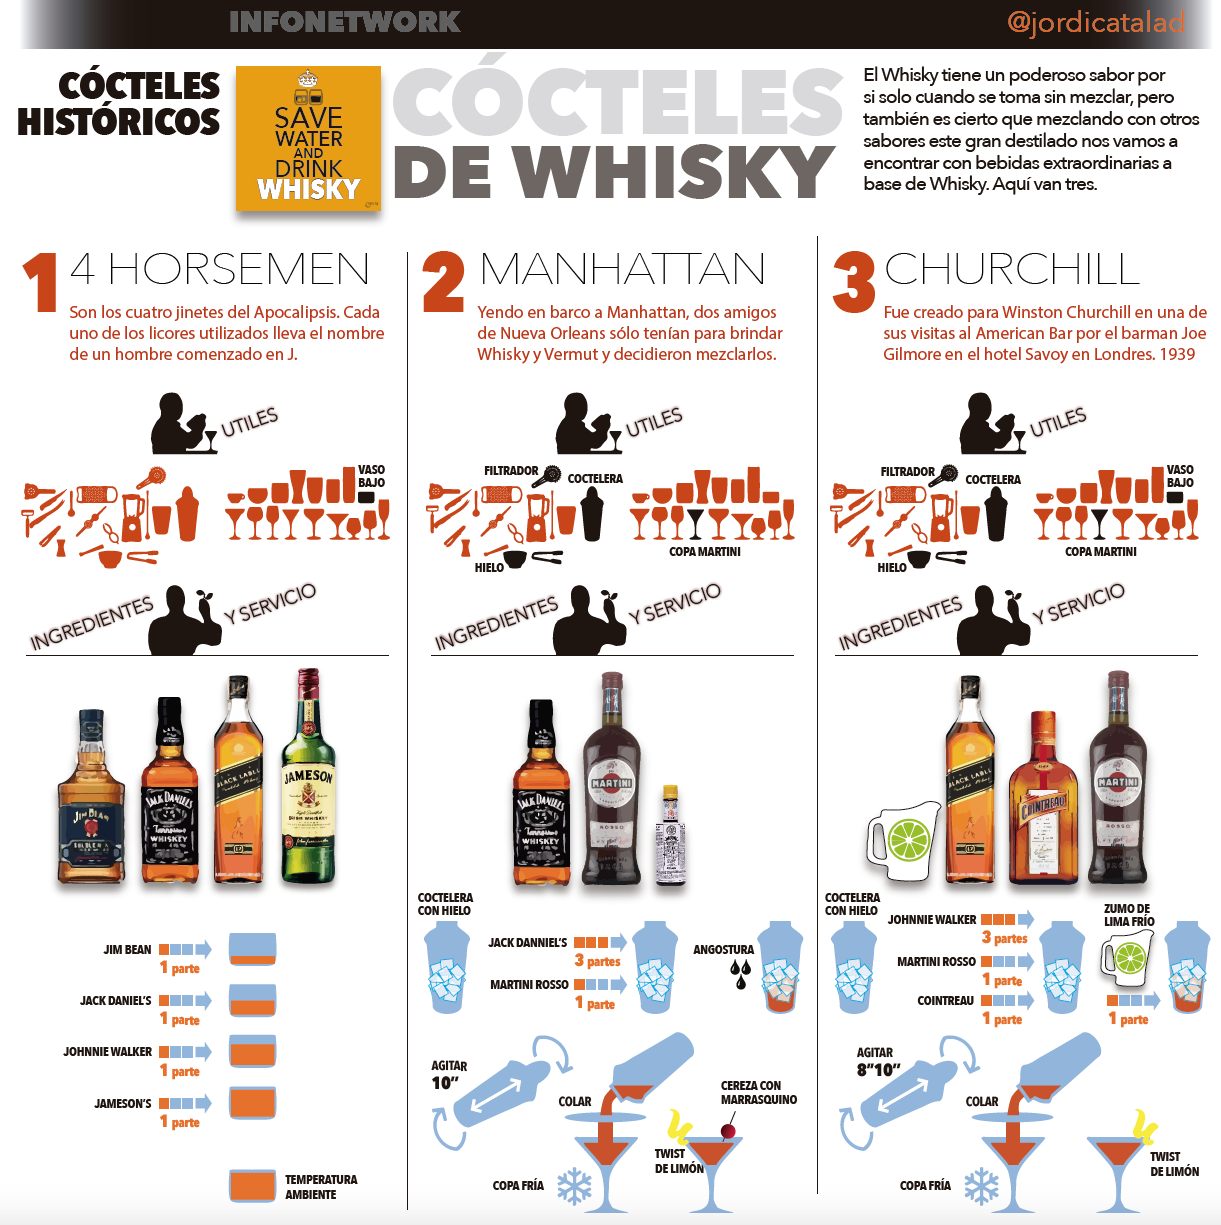 Info 3: Whisky